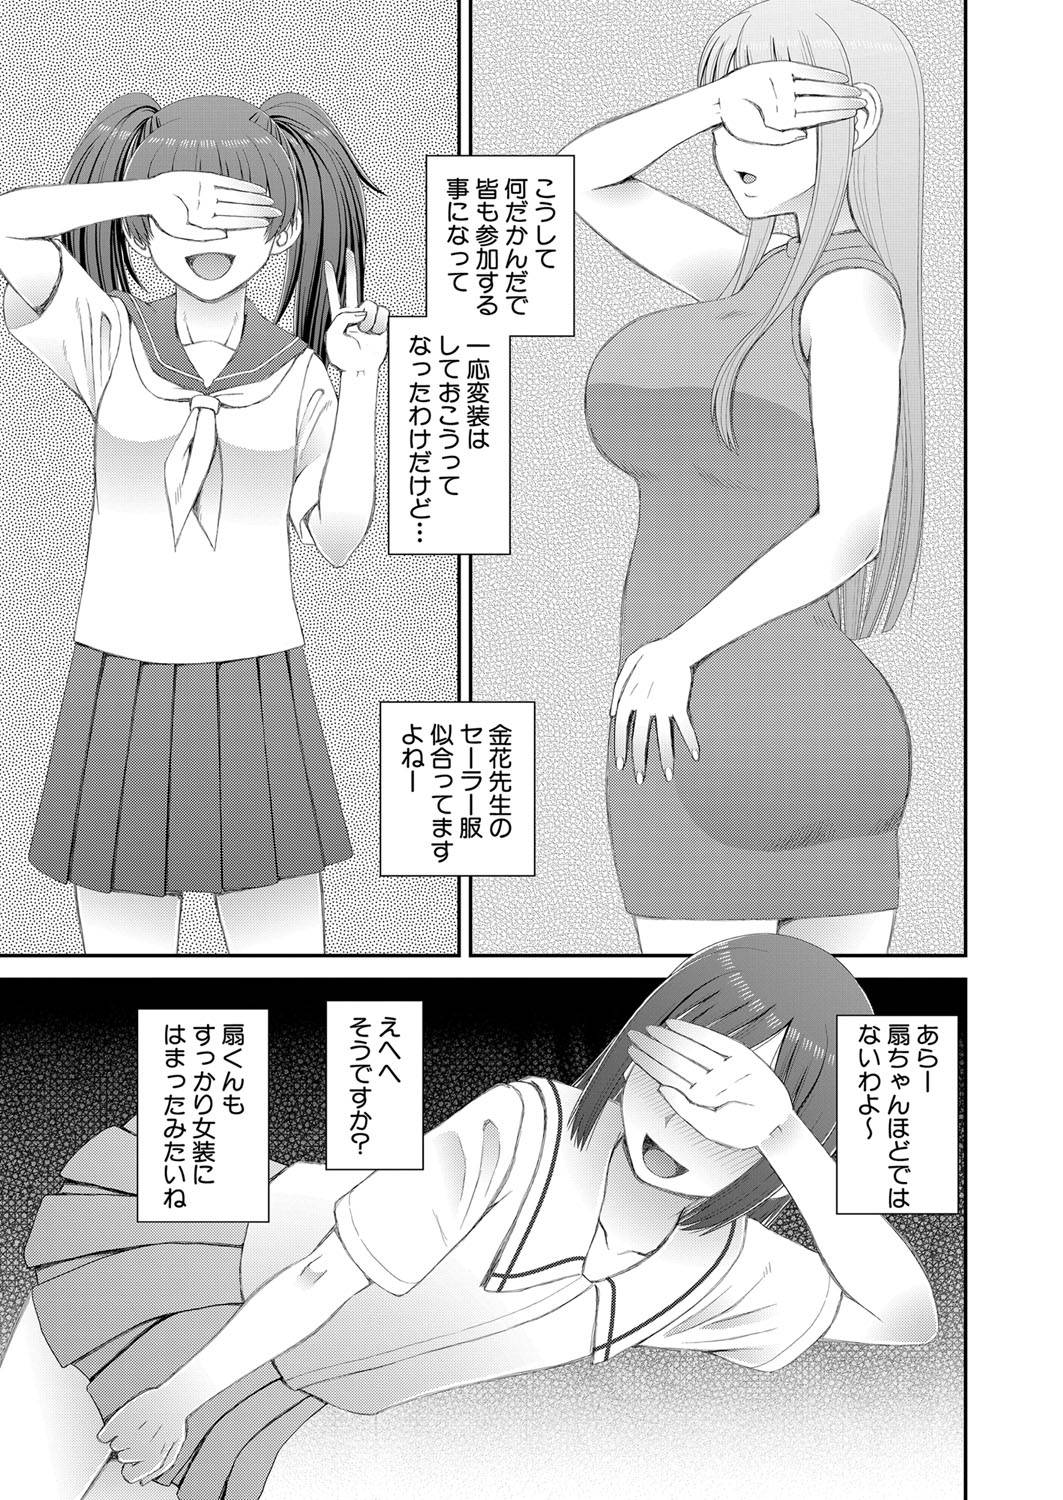 【エロ漫画】ふたなりの巨乳美少女JKは、先生と友達と露出プレイをしながらネットに配信する…【樺島あきら】